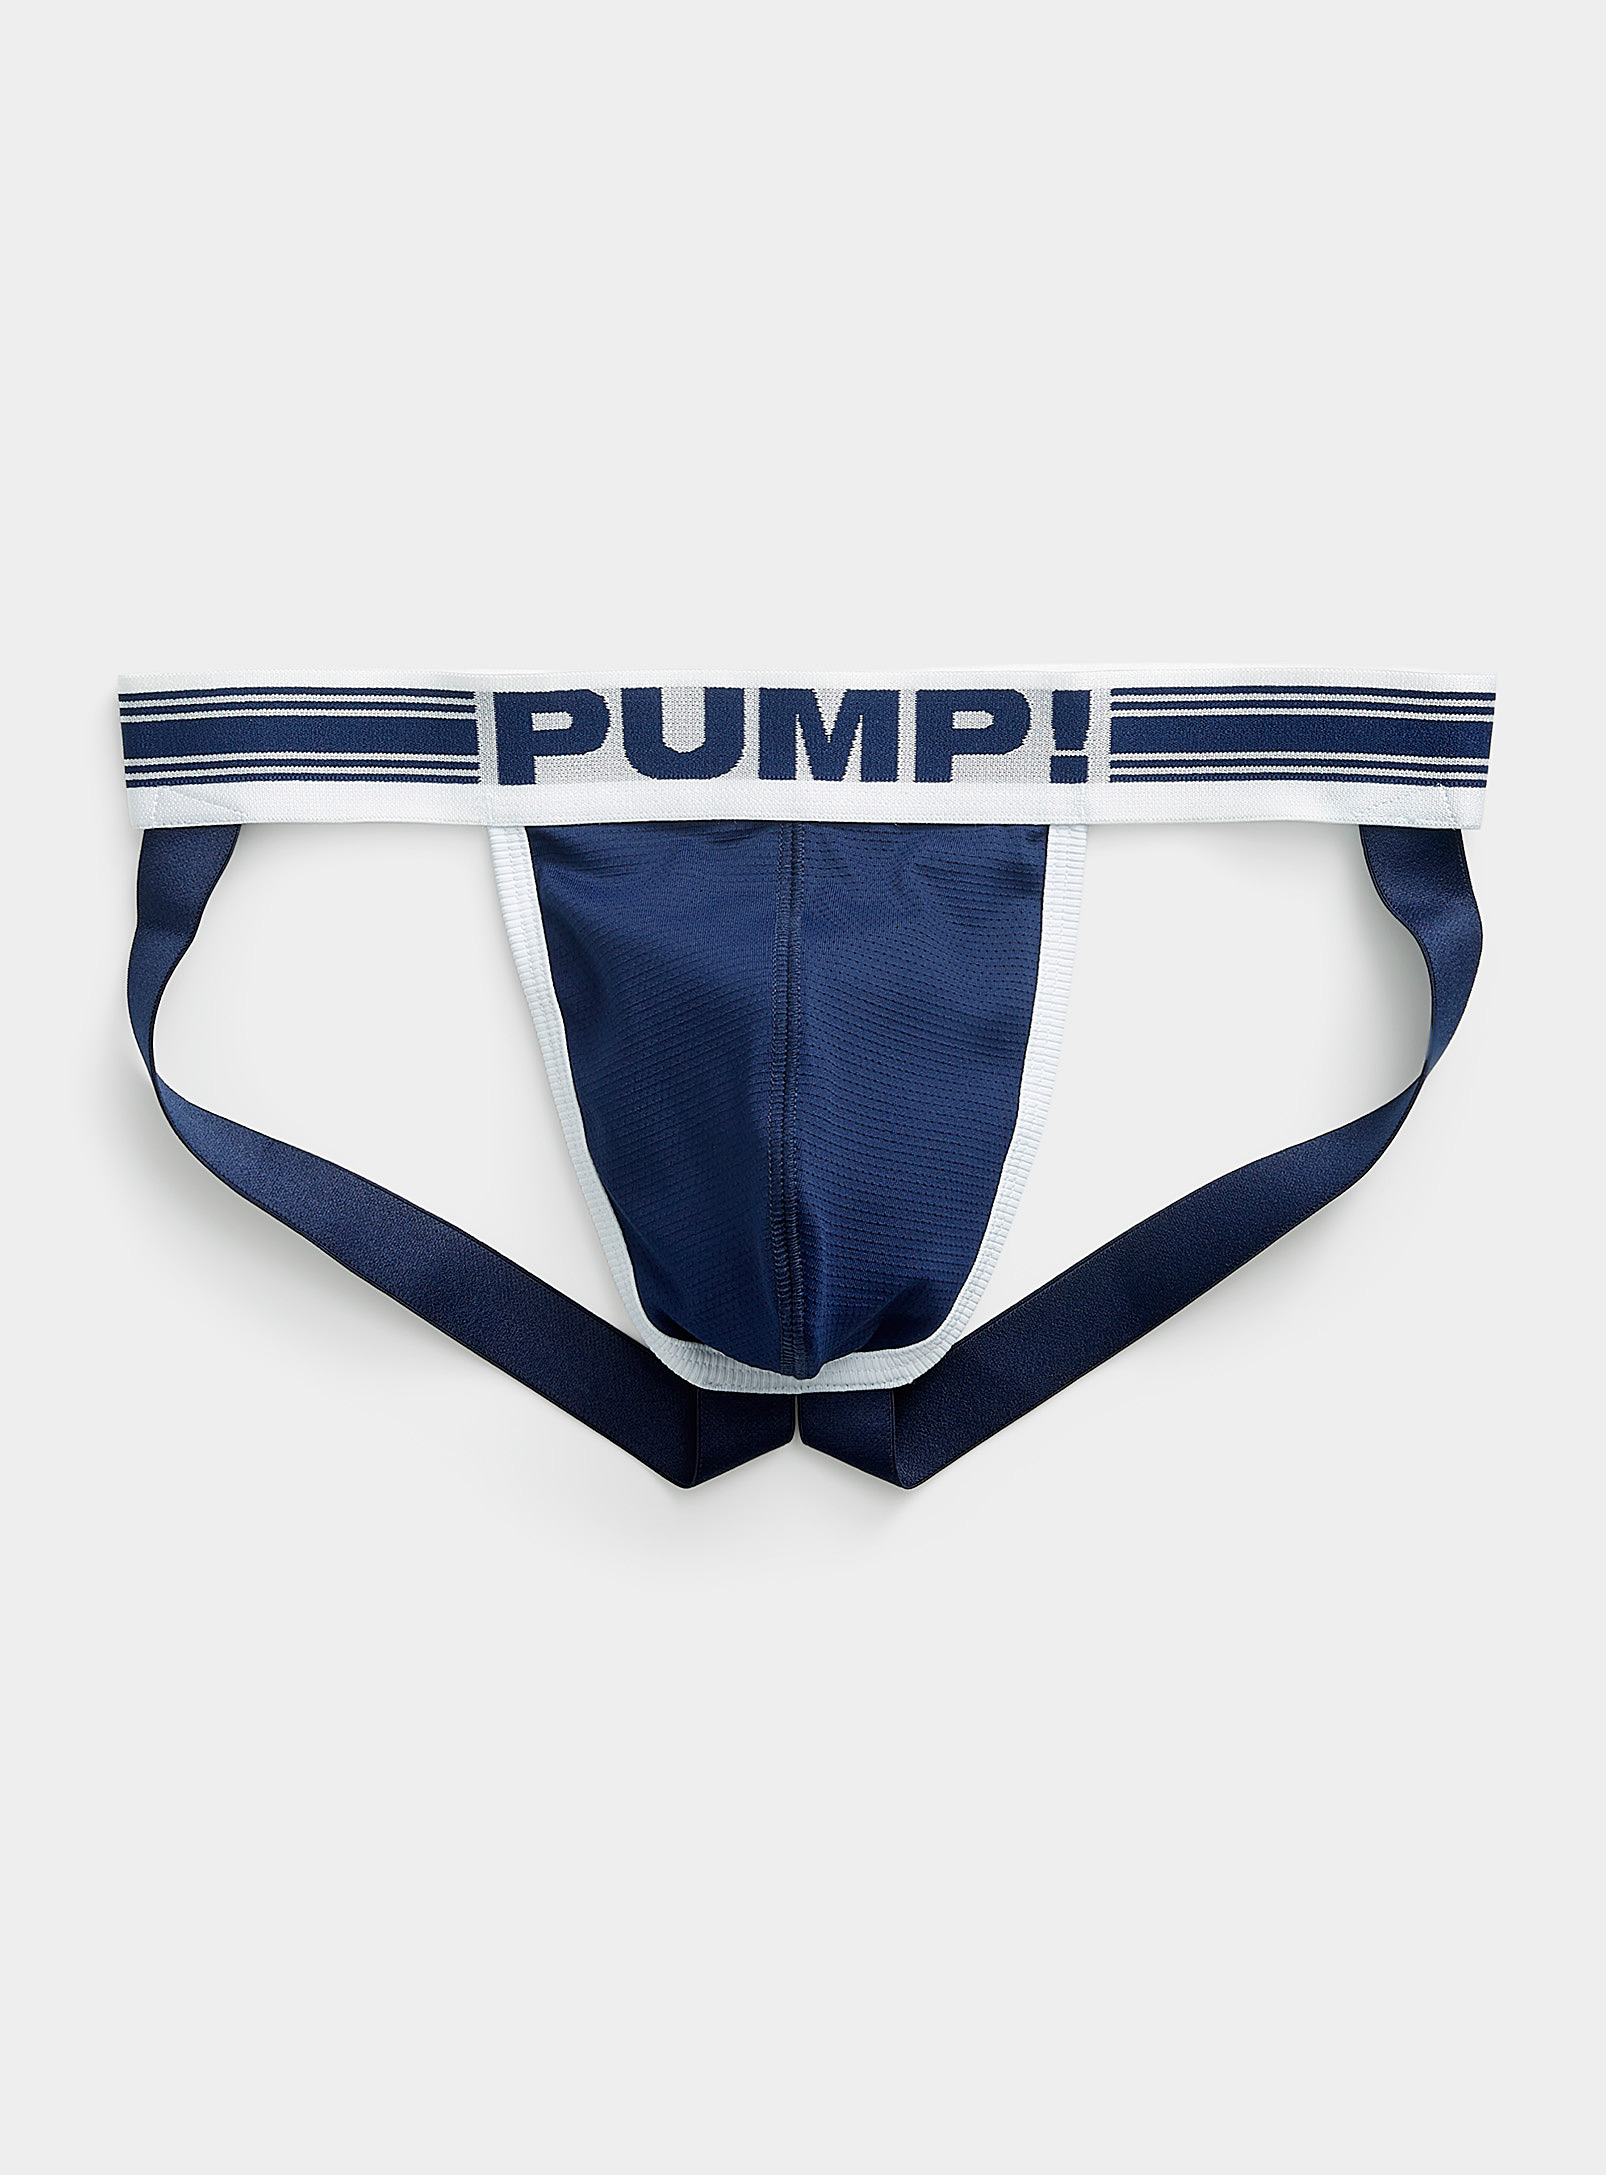 Pump! - Men's Thunder jockstrap